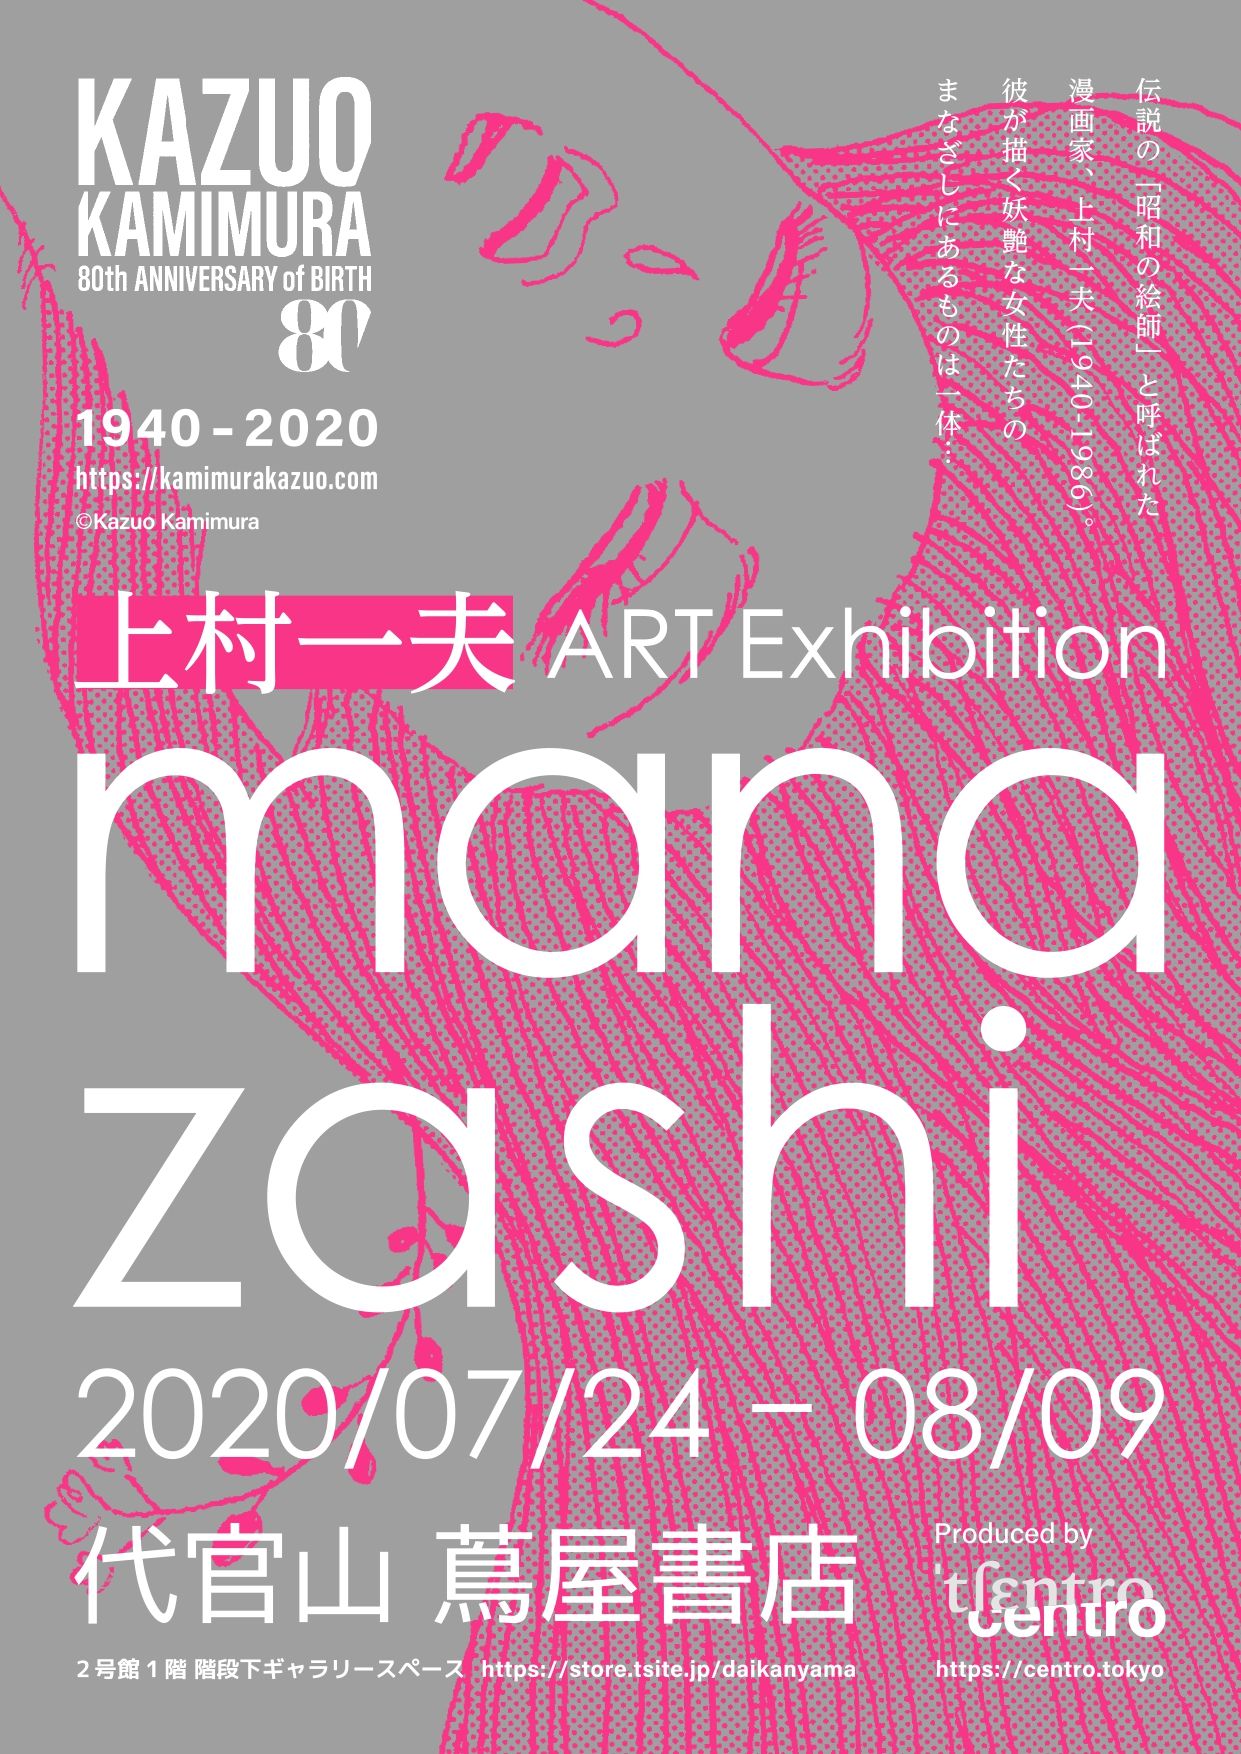 上村一夫のART Exhibition「manazashi」